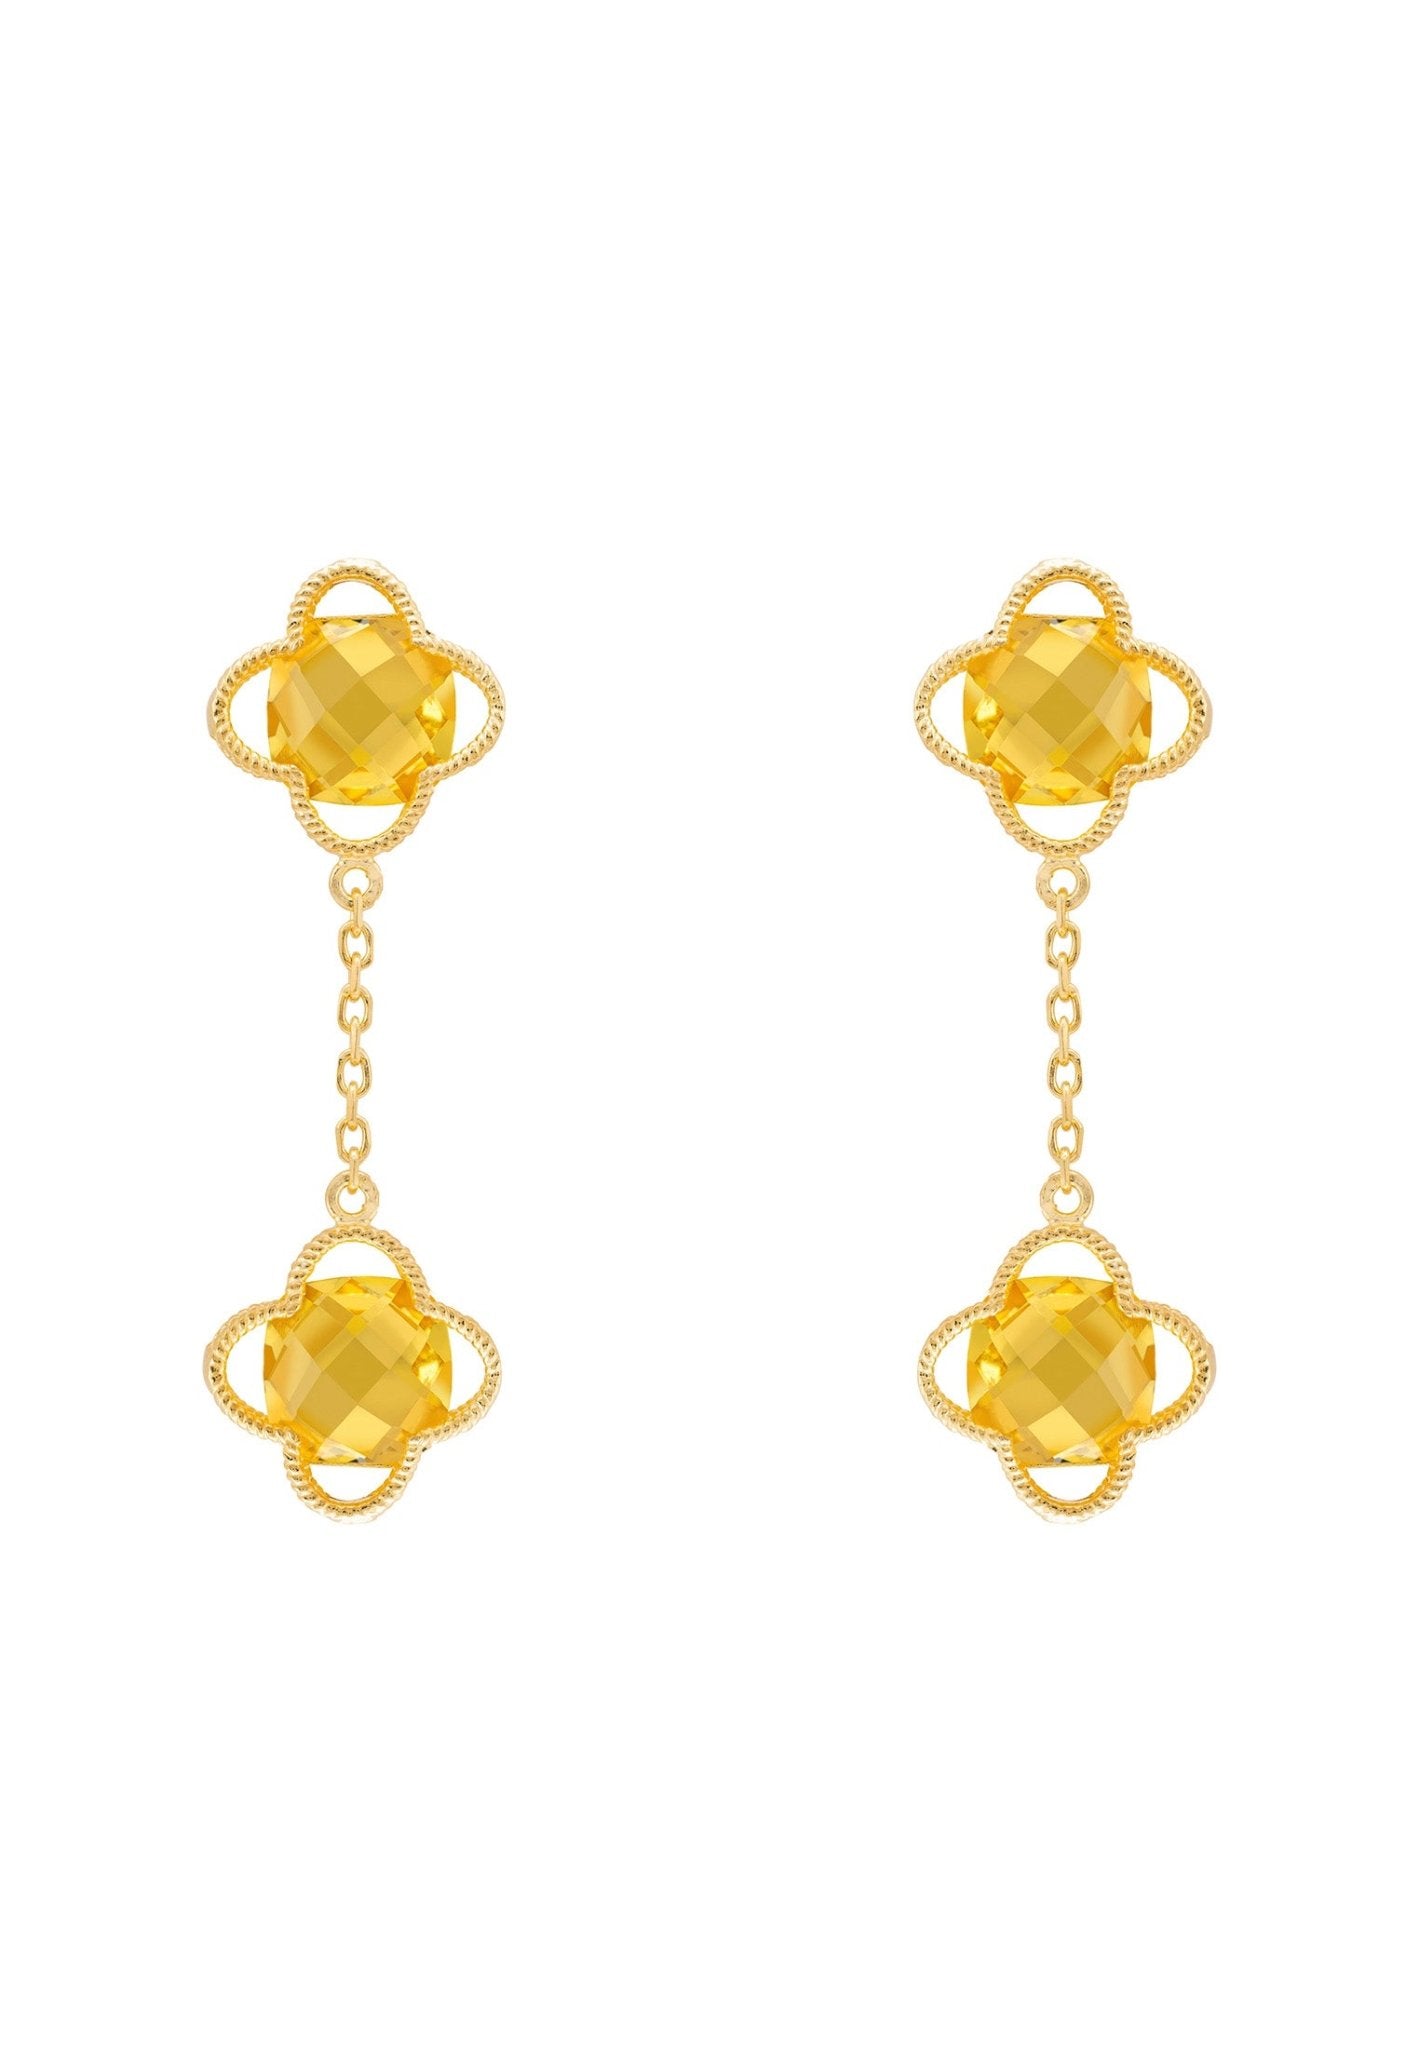 Open Clover Double Drop Earrings Gold Citrine Hydro - LATELITA Earrings